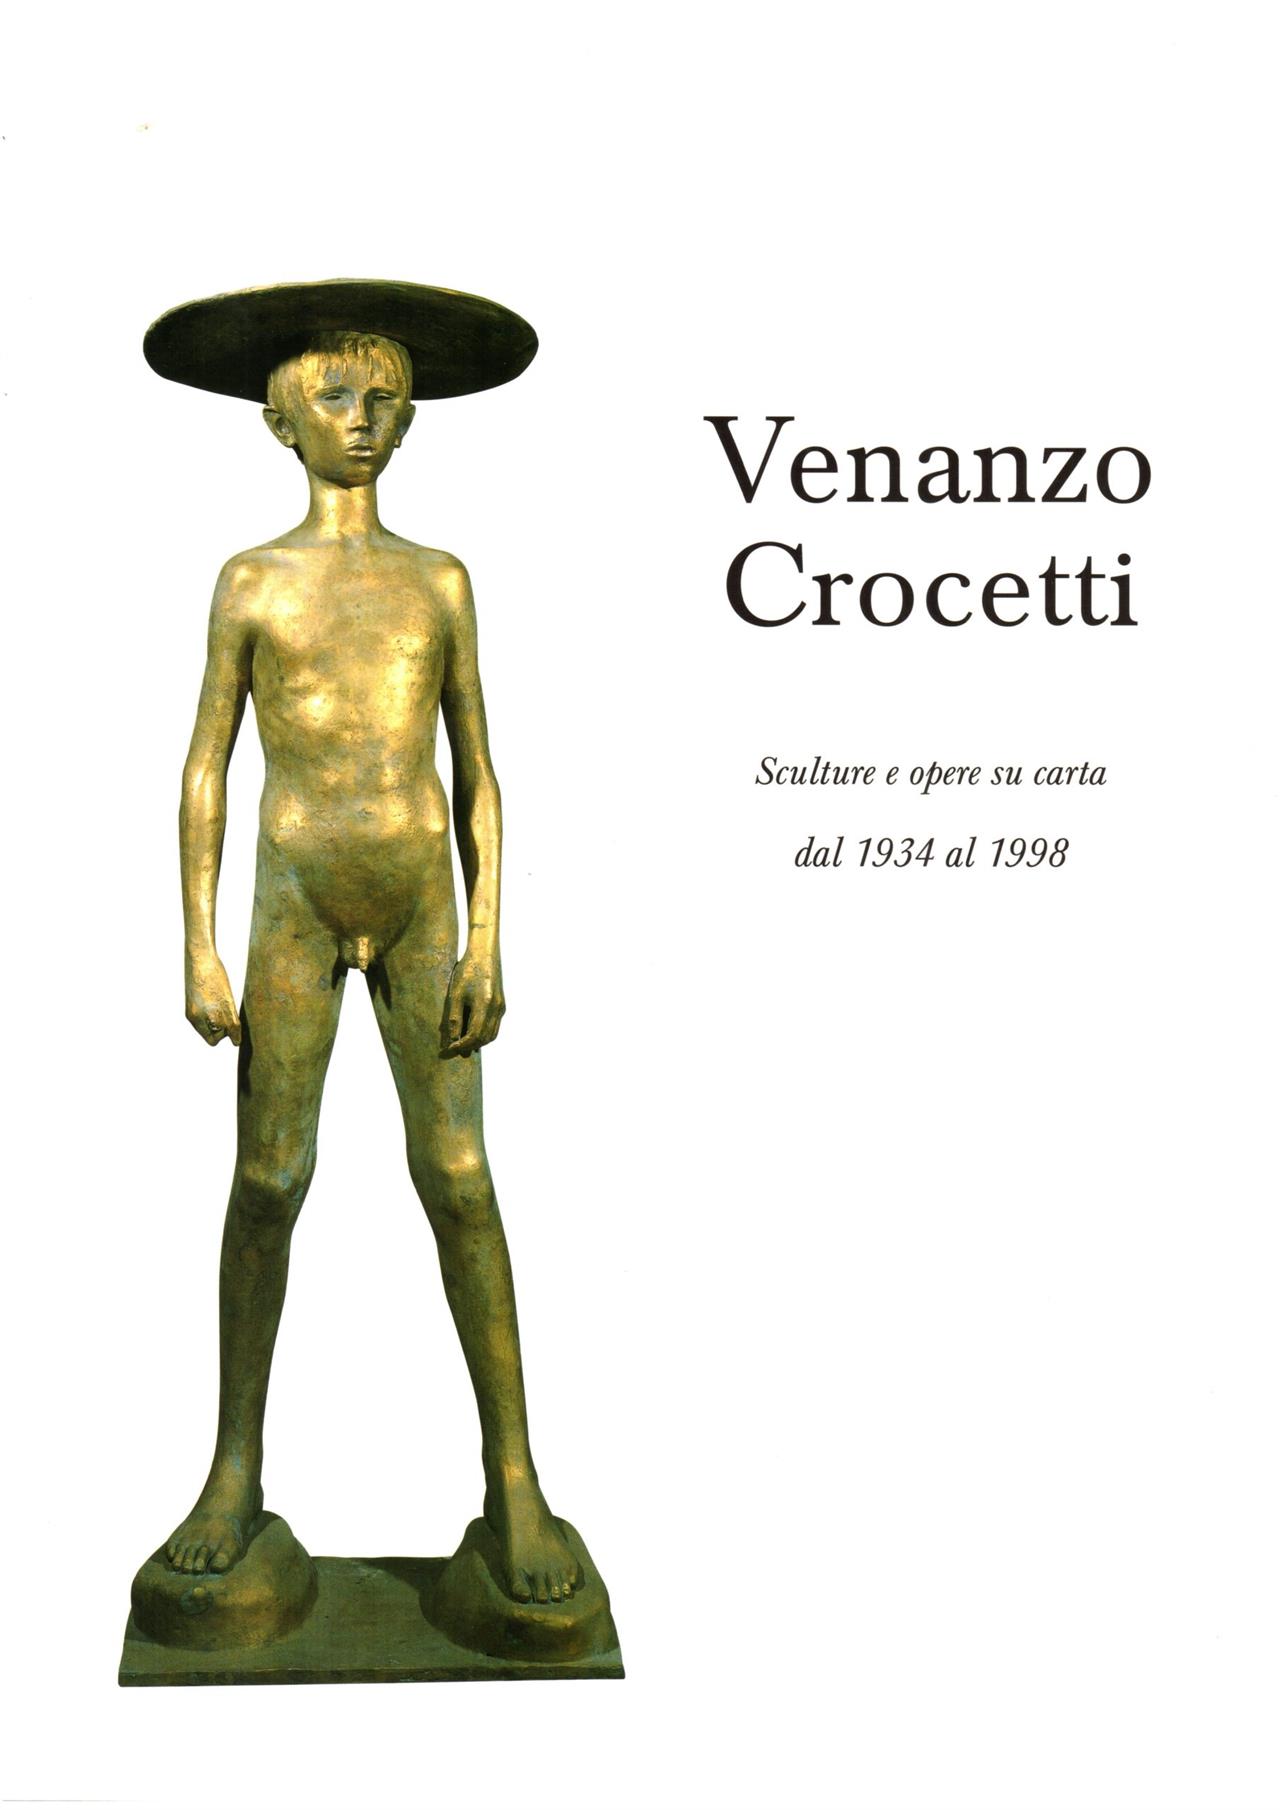 Venanzo Crocetti, Sculture e opere su carta dal 1934 al 1998